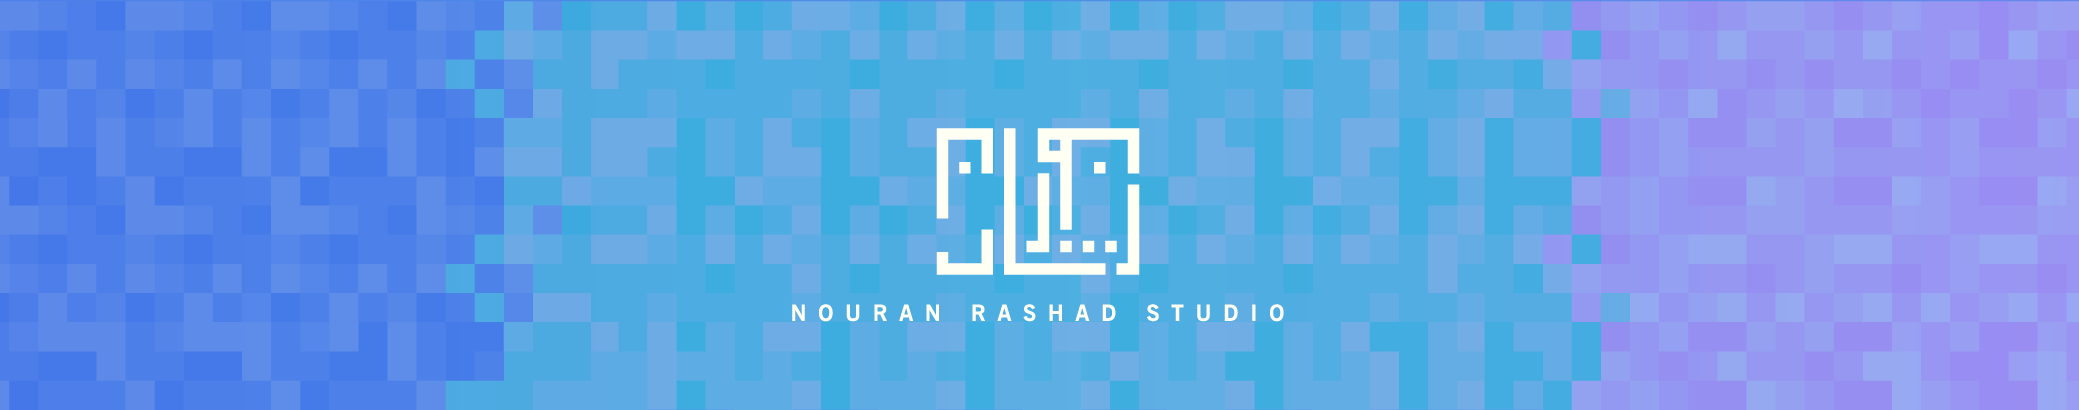 Banner de perfil de Nouran Rashad